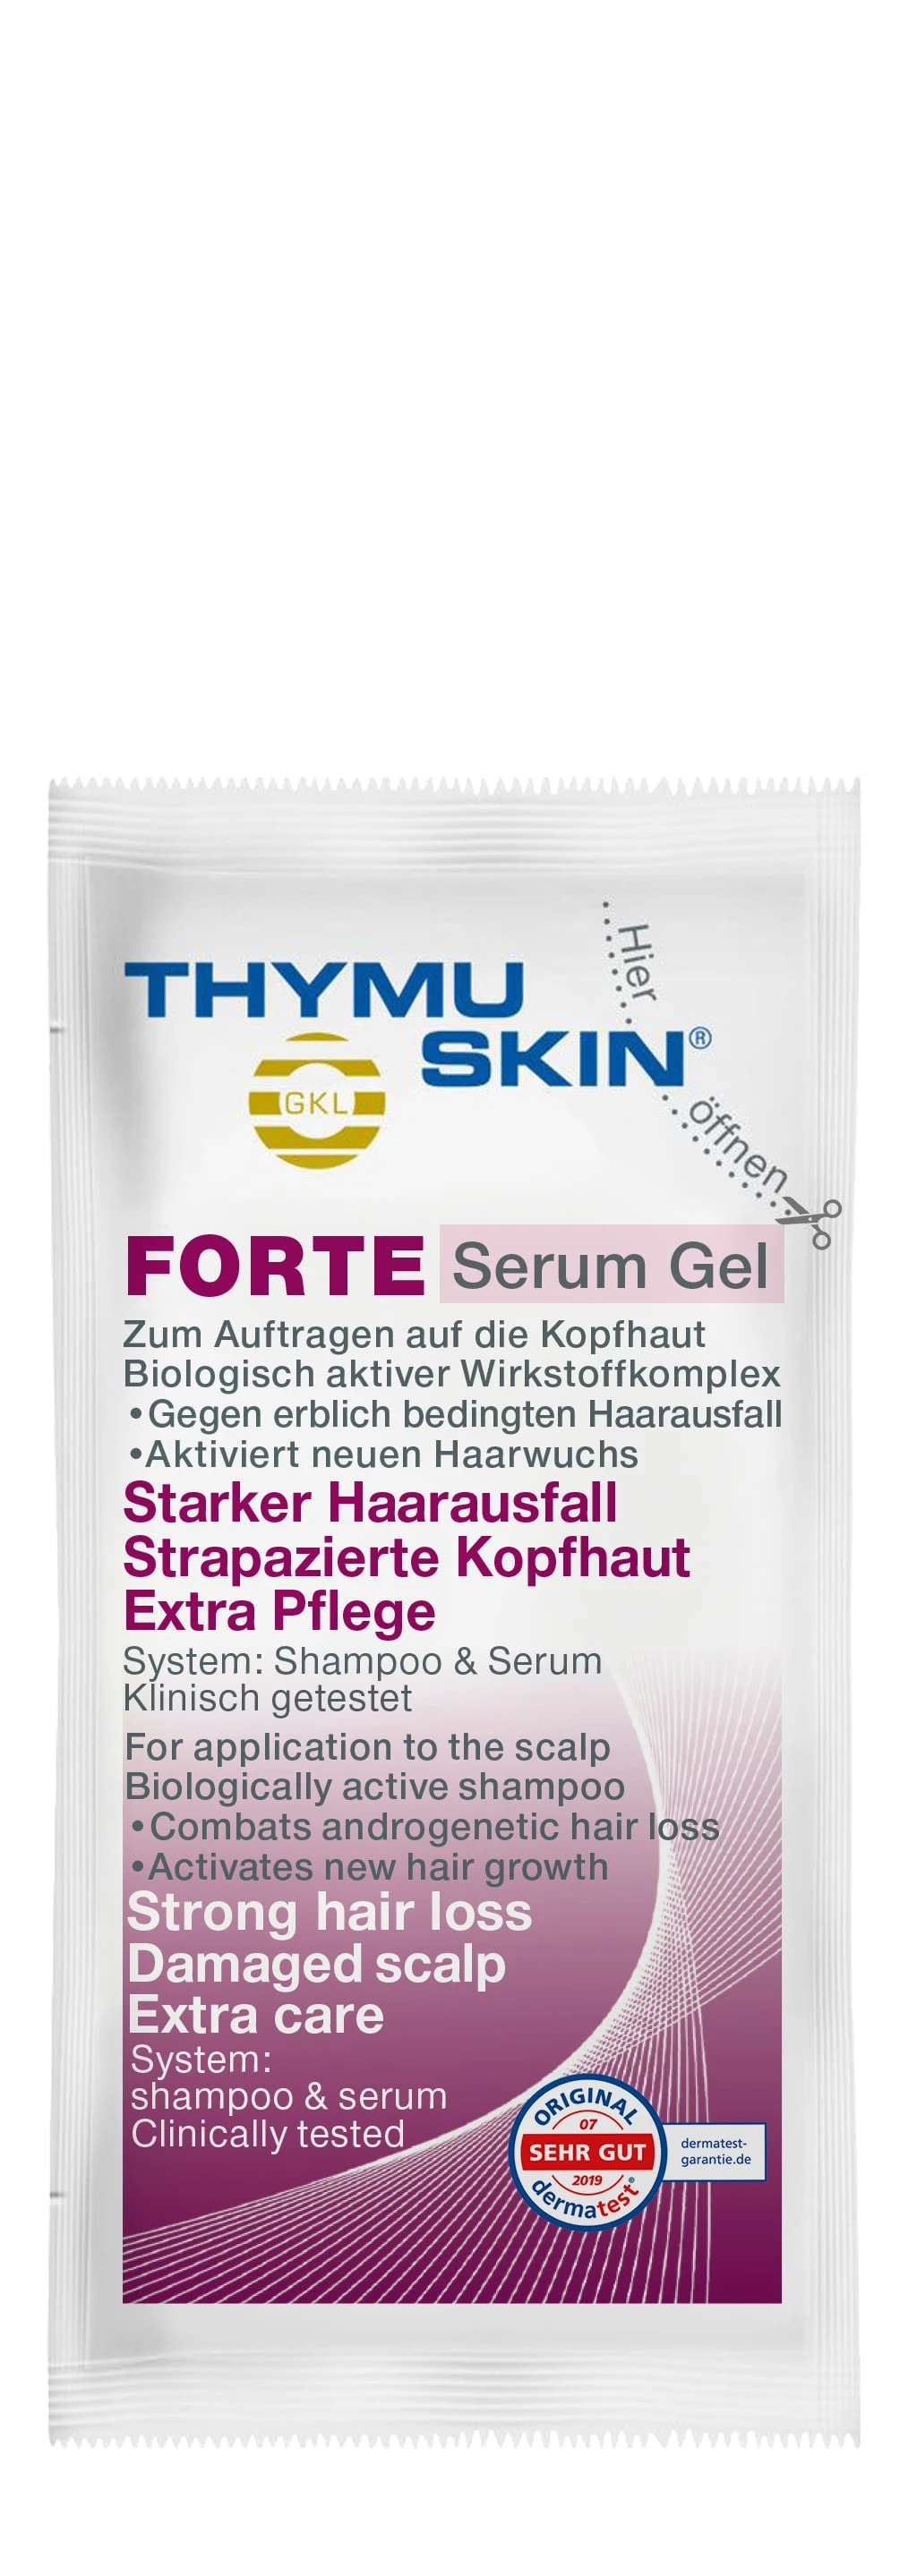 FORTE Serum Gel (Sample)